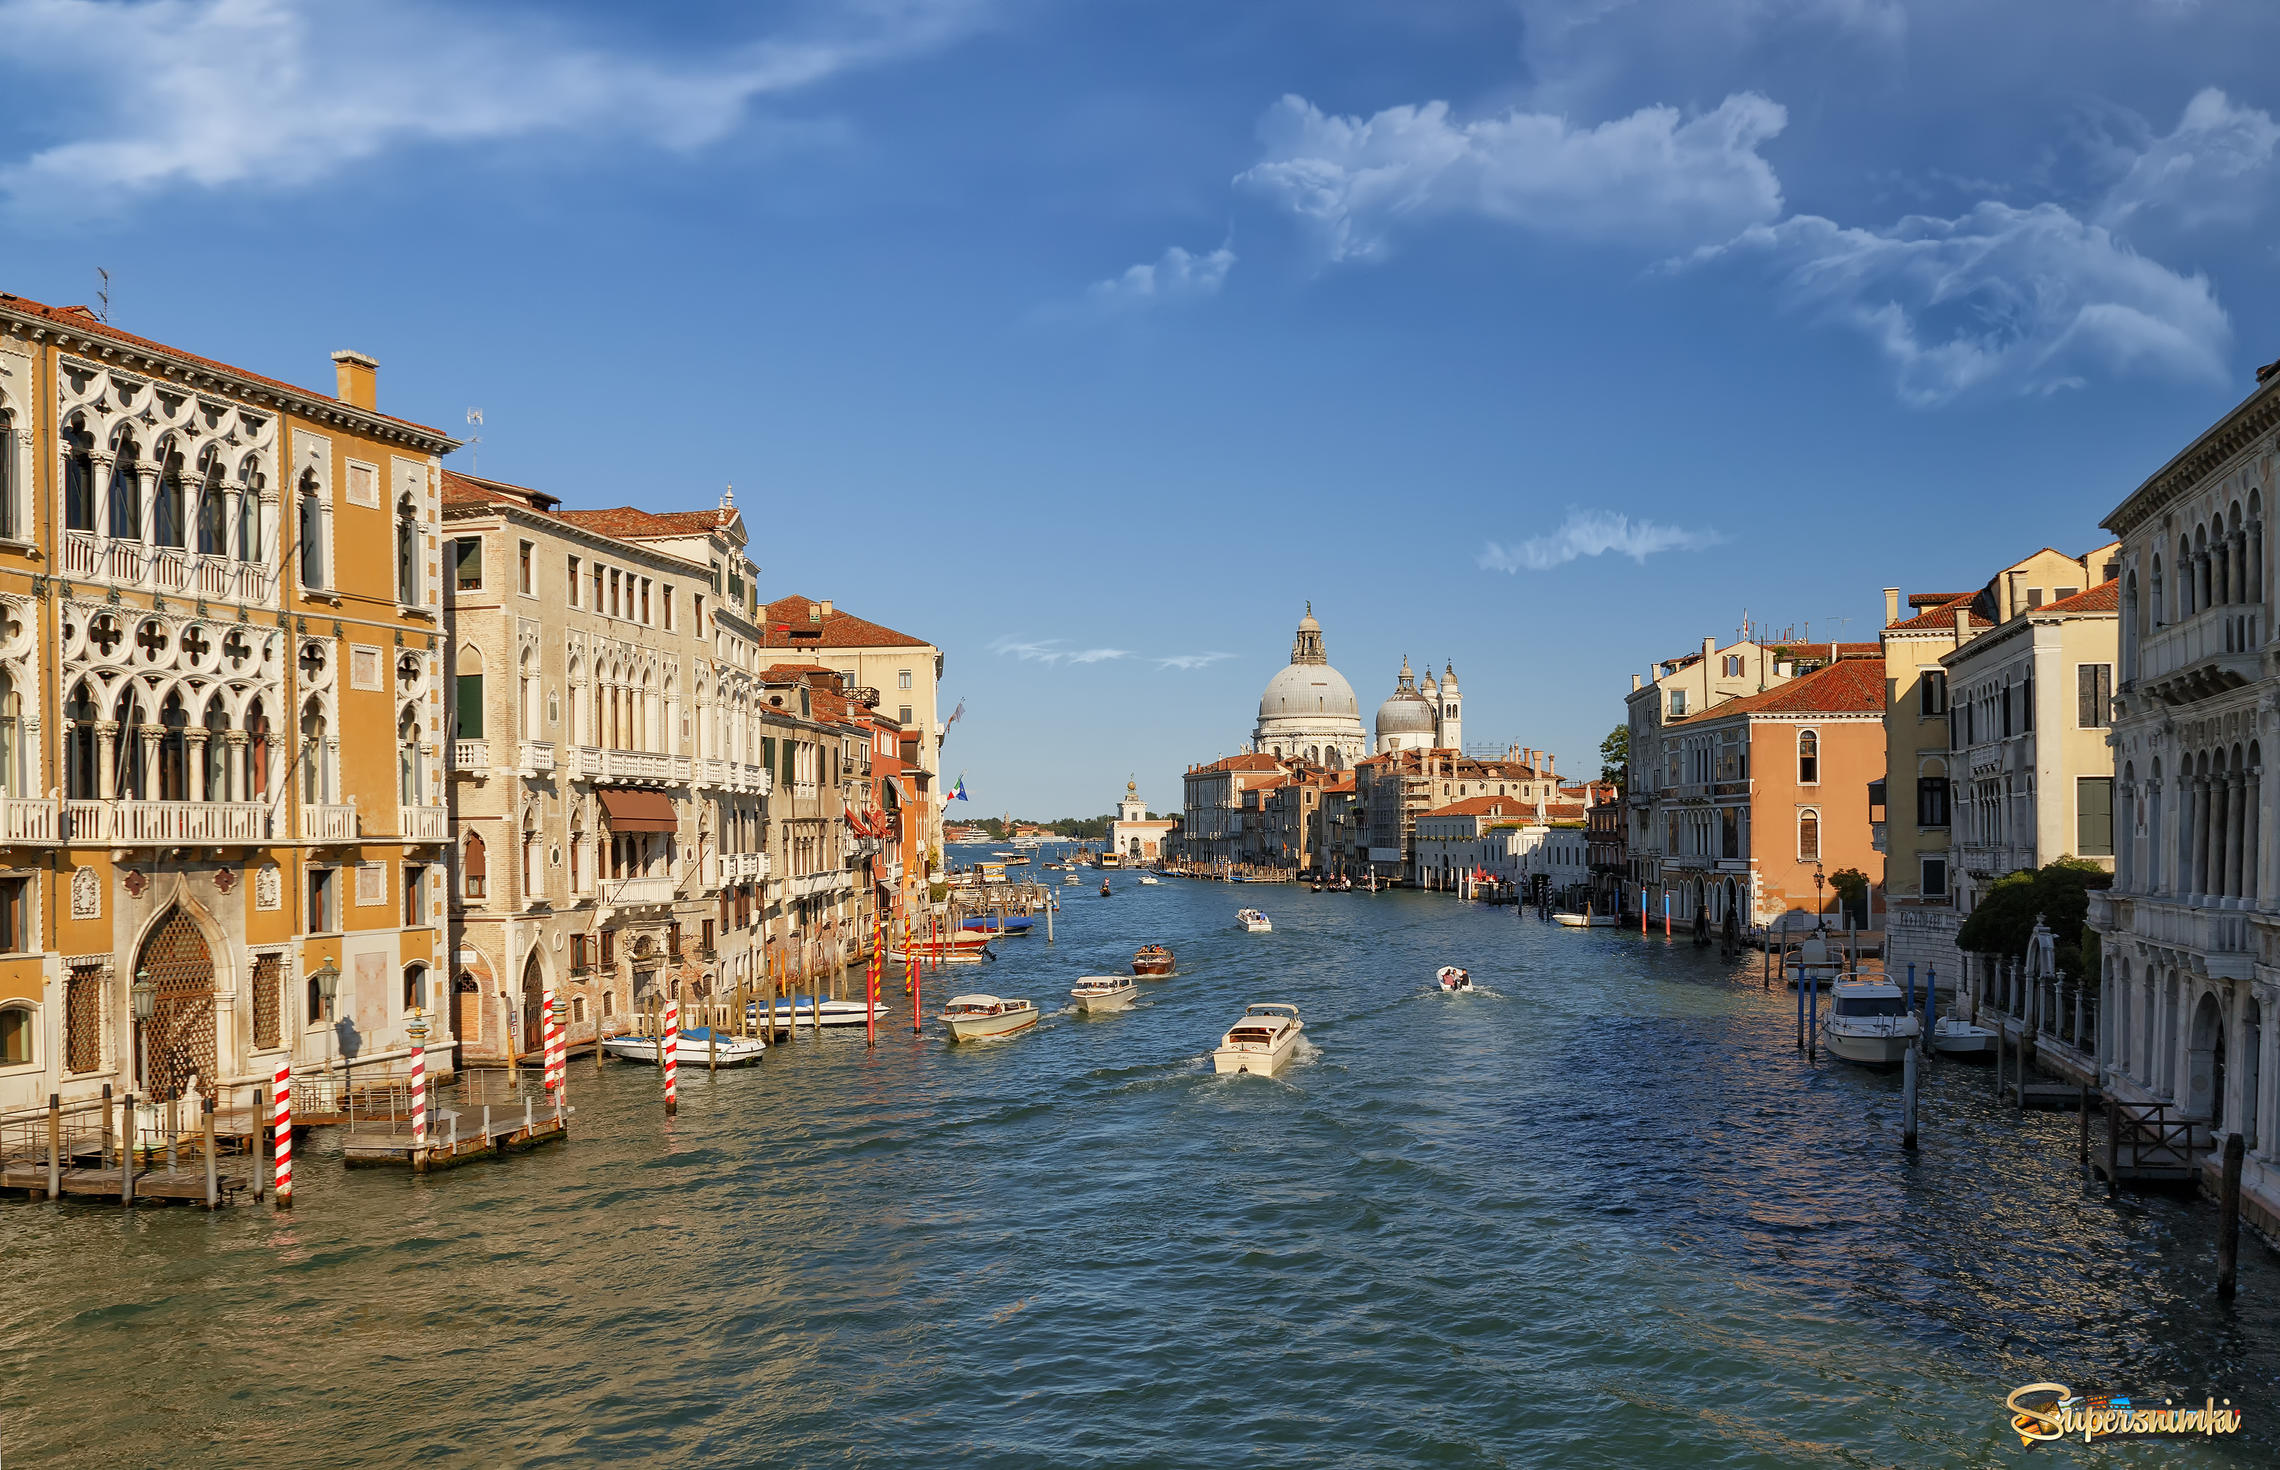 Venice , Italy